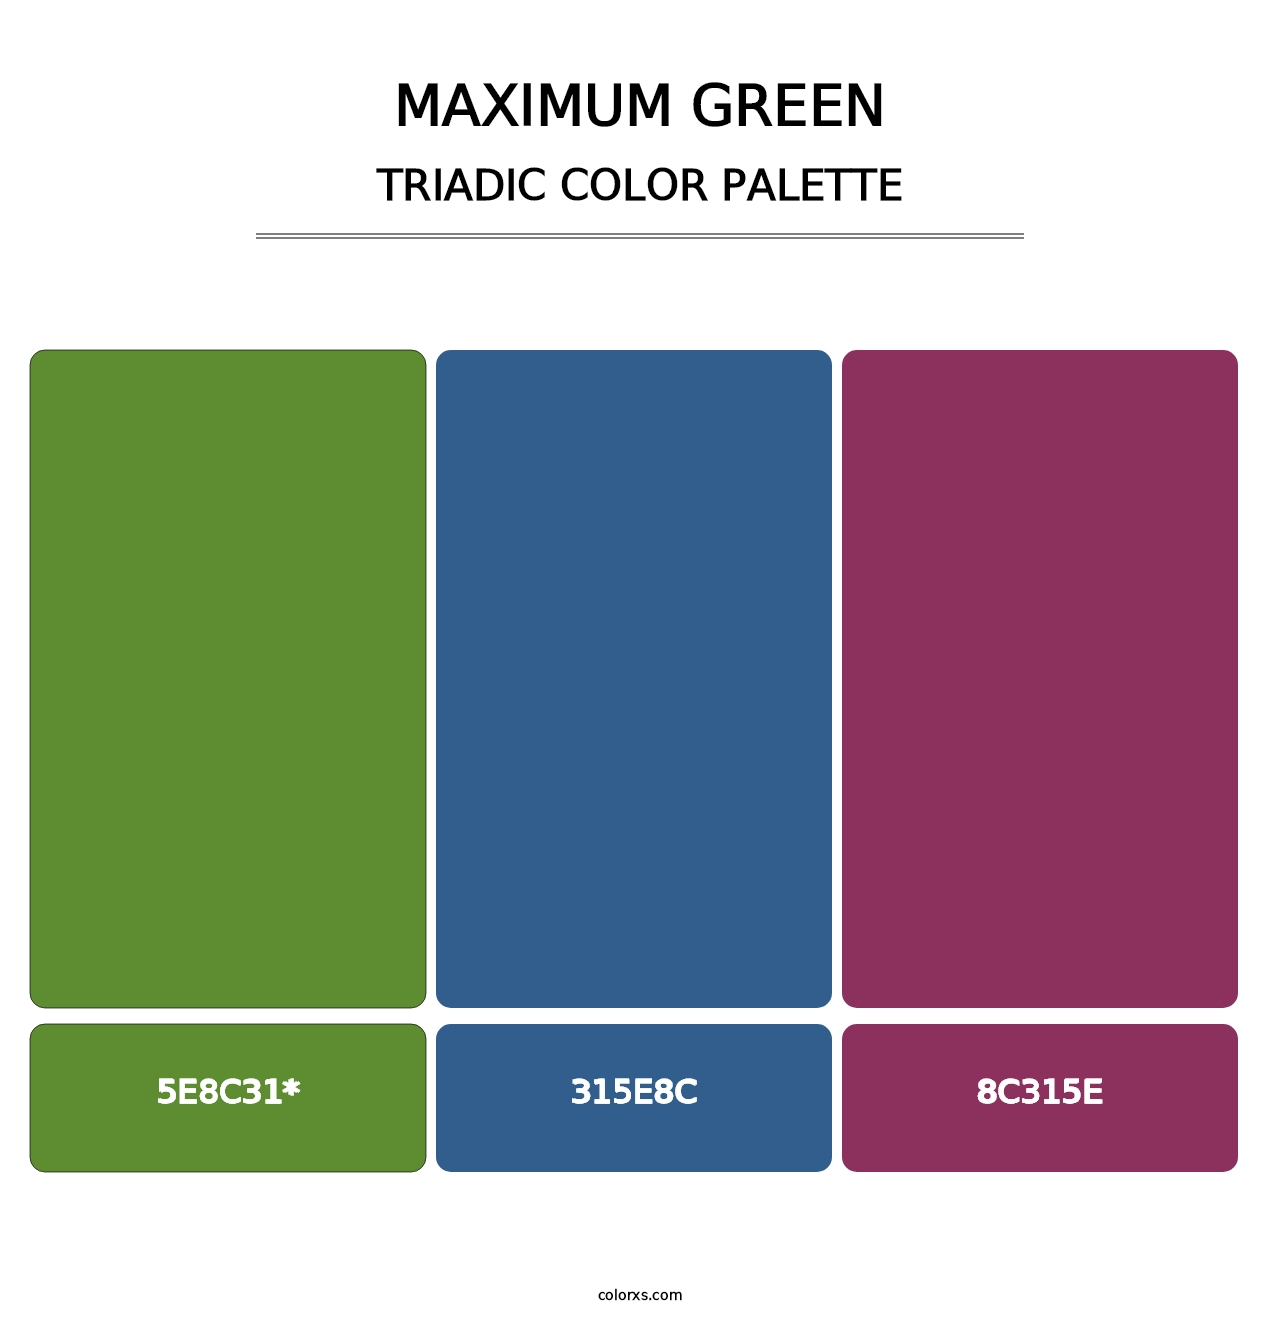 Maximum Green - Triadic Color Palette